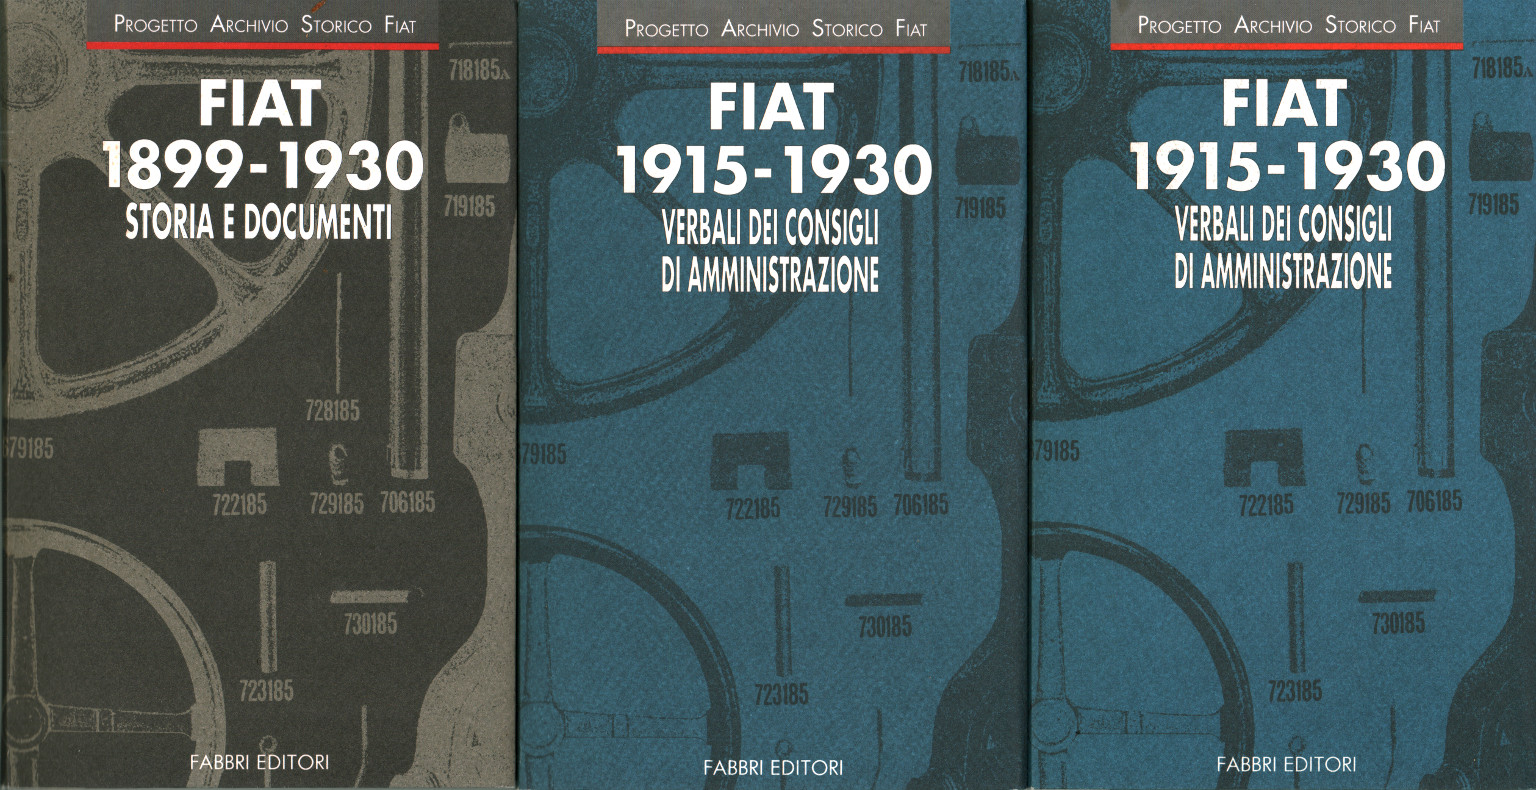 FIAT 1915-1930 Protokoll des Vorstands von %,FIAT 1915-1930 Protokoll des Vorstands von %,FIAT 1915-1930 Protokoll des Vorstands von %